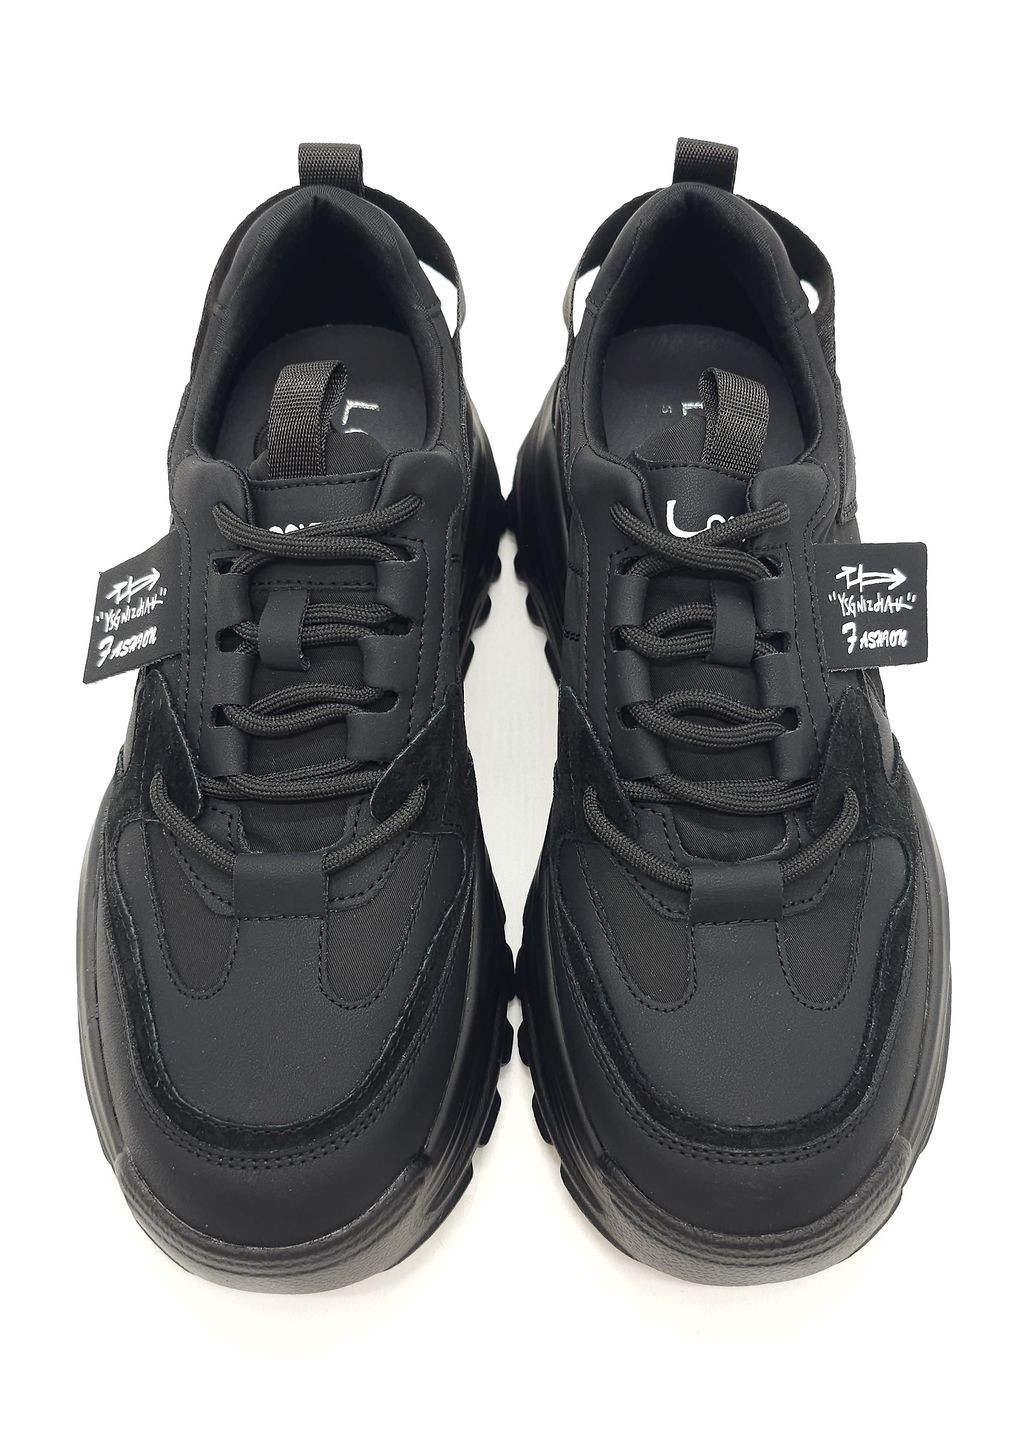 Черные всесезонные женские кроссовки черные кожаные l-10-29 23 см(р) Lonza